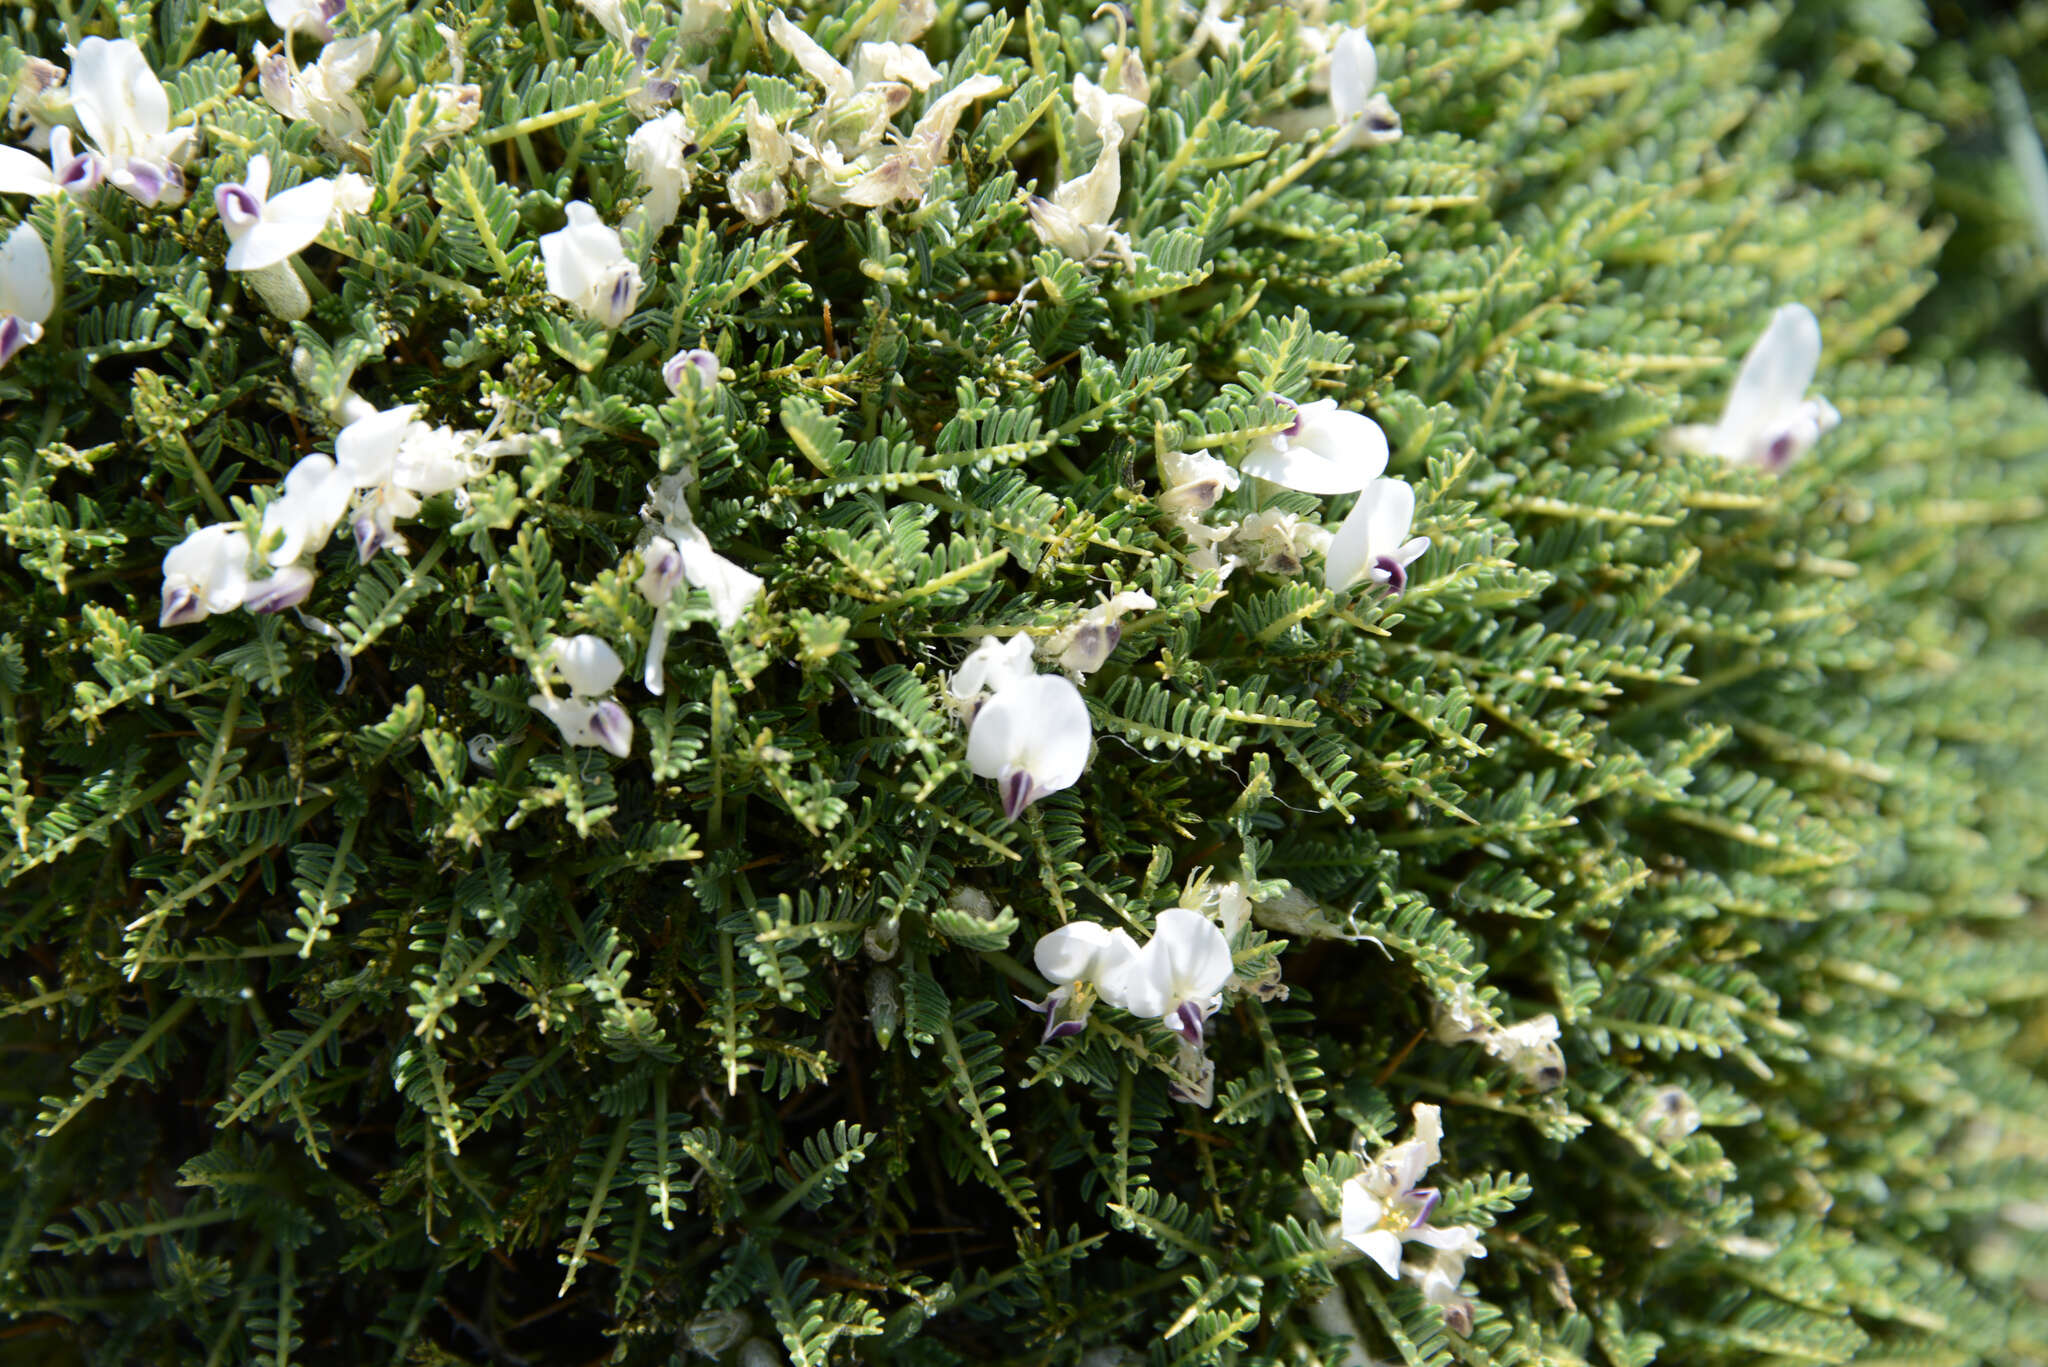 Image of Astragalus angustifolius Lam.